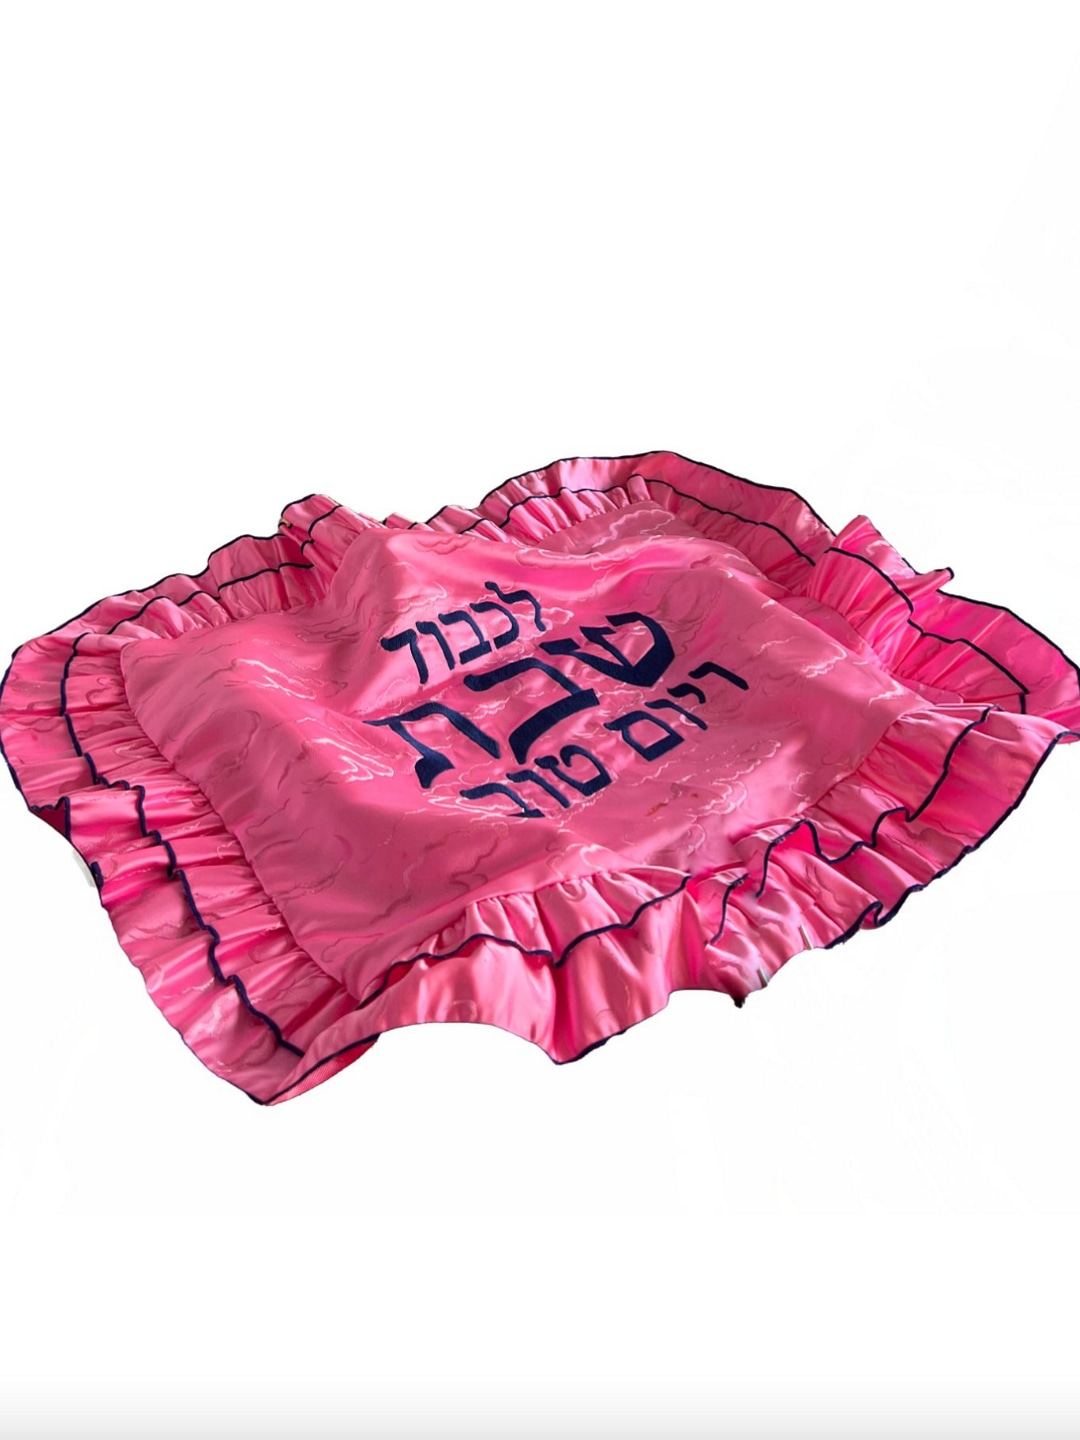 Eccentric The Challah Bread Cover In Pink Satin - Madeline Simon Studio